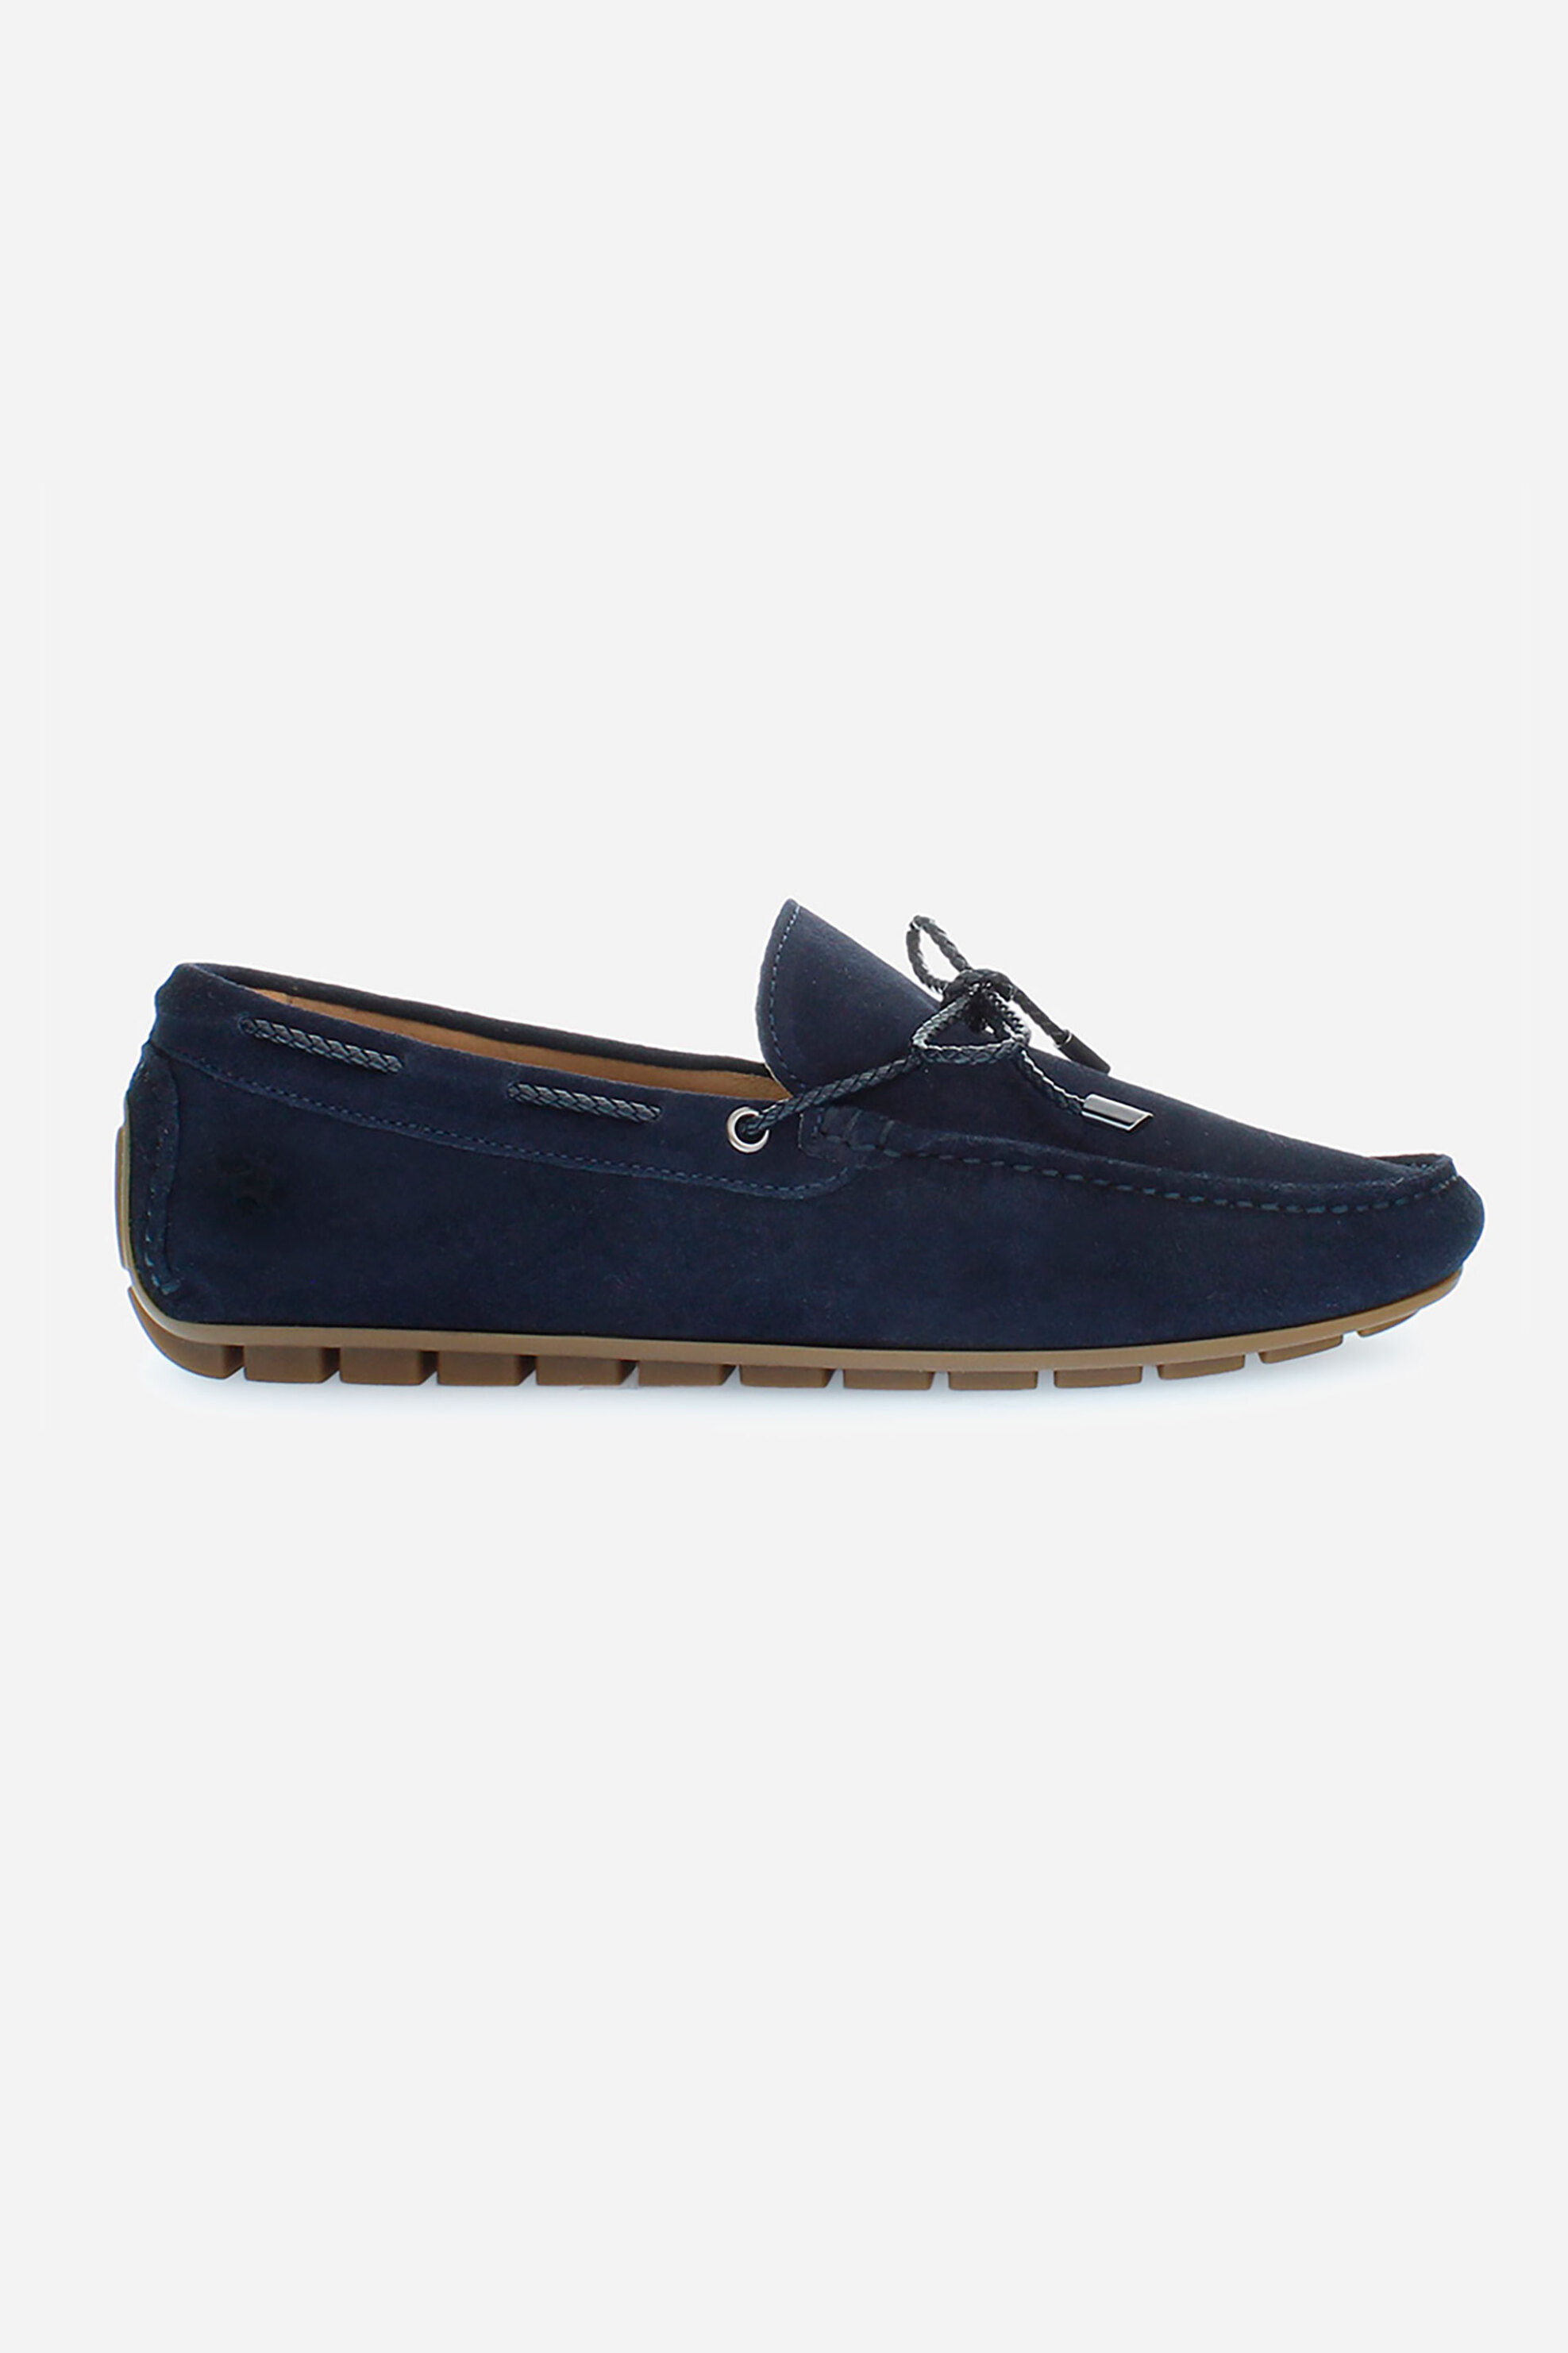 Ανδρική Μόδα > Ανδρικά Παπούτσια > Ανδρικά Boat Shoes La Martina ανδρικά boat παπούτσια από δέρμα καστόρι μονόχρωμα με ανάγλυφο έμβλημα - LFM241092-3200 Σκούρο Μπλε